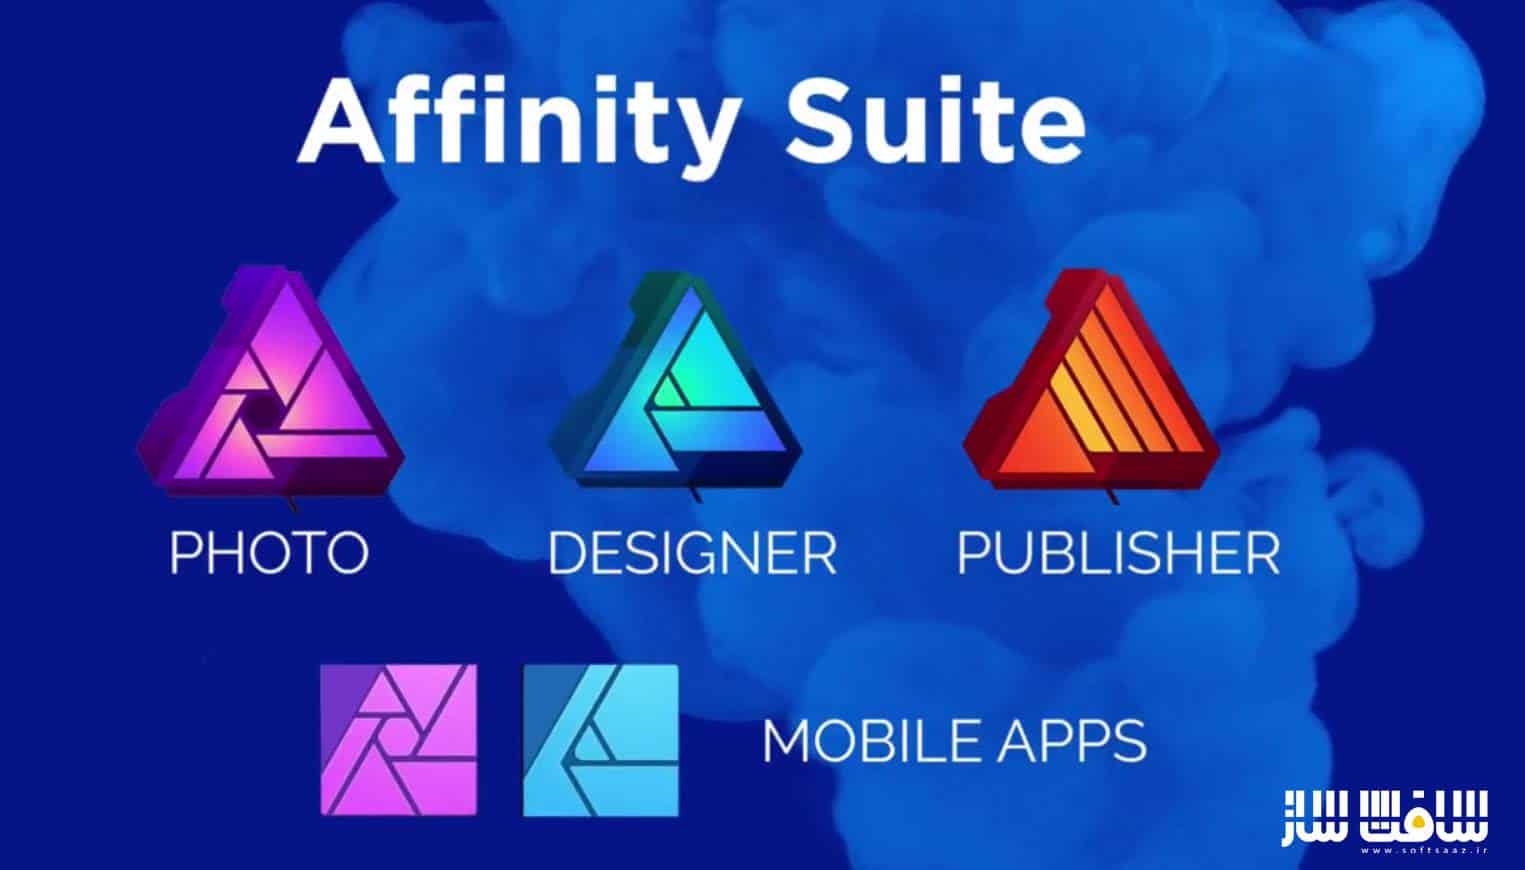 آموزش کامل Affinity Suite : تصویر،طراحی و ناشر